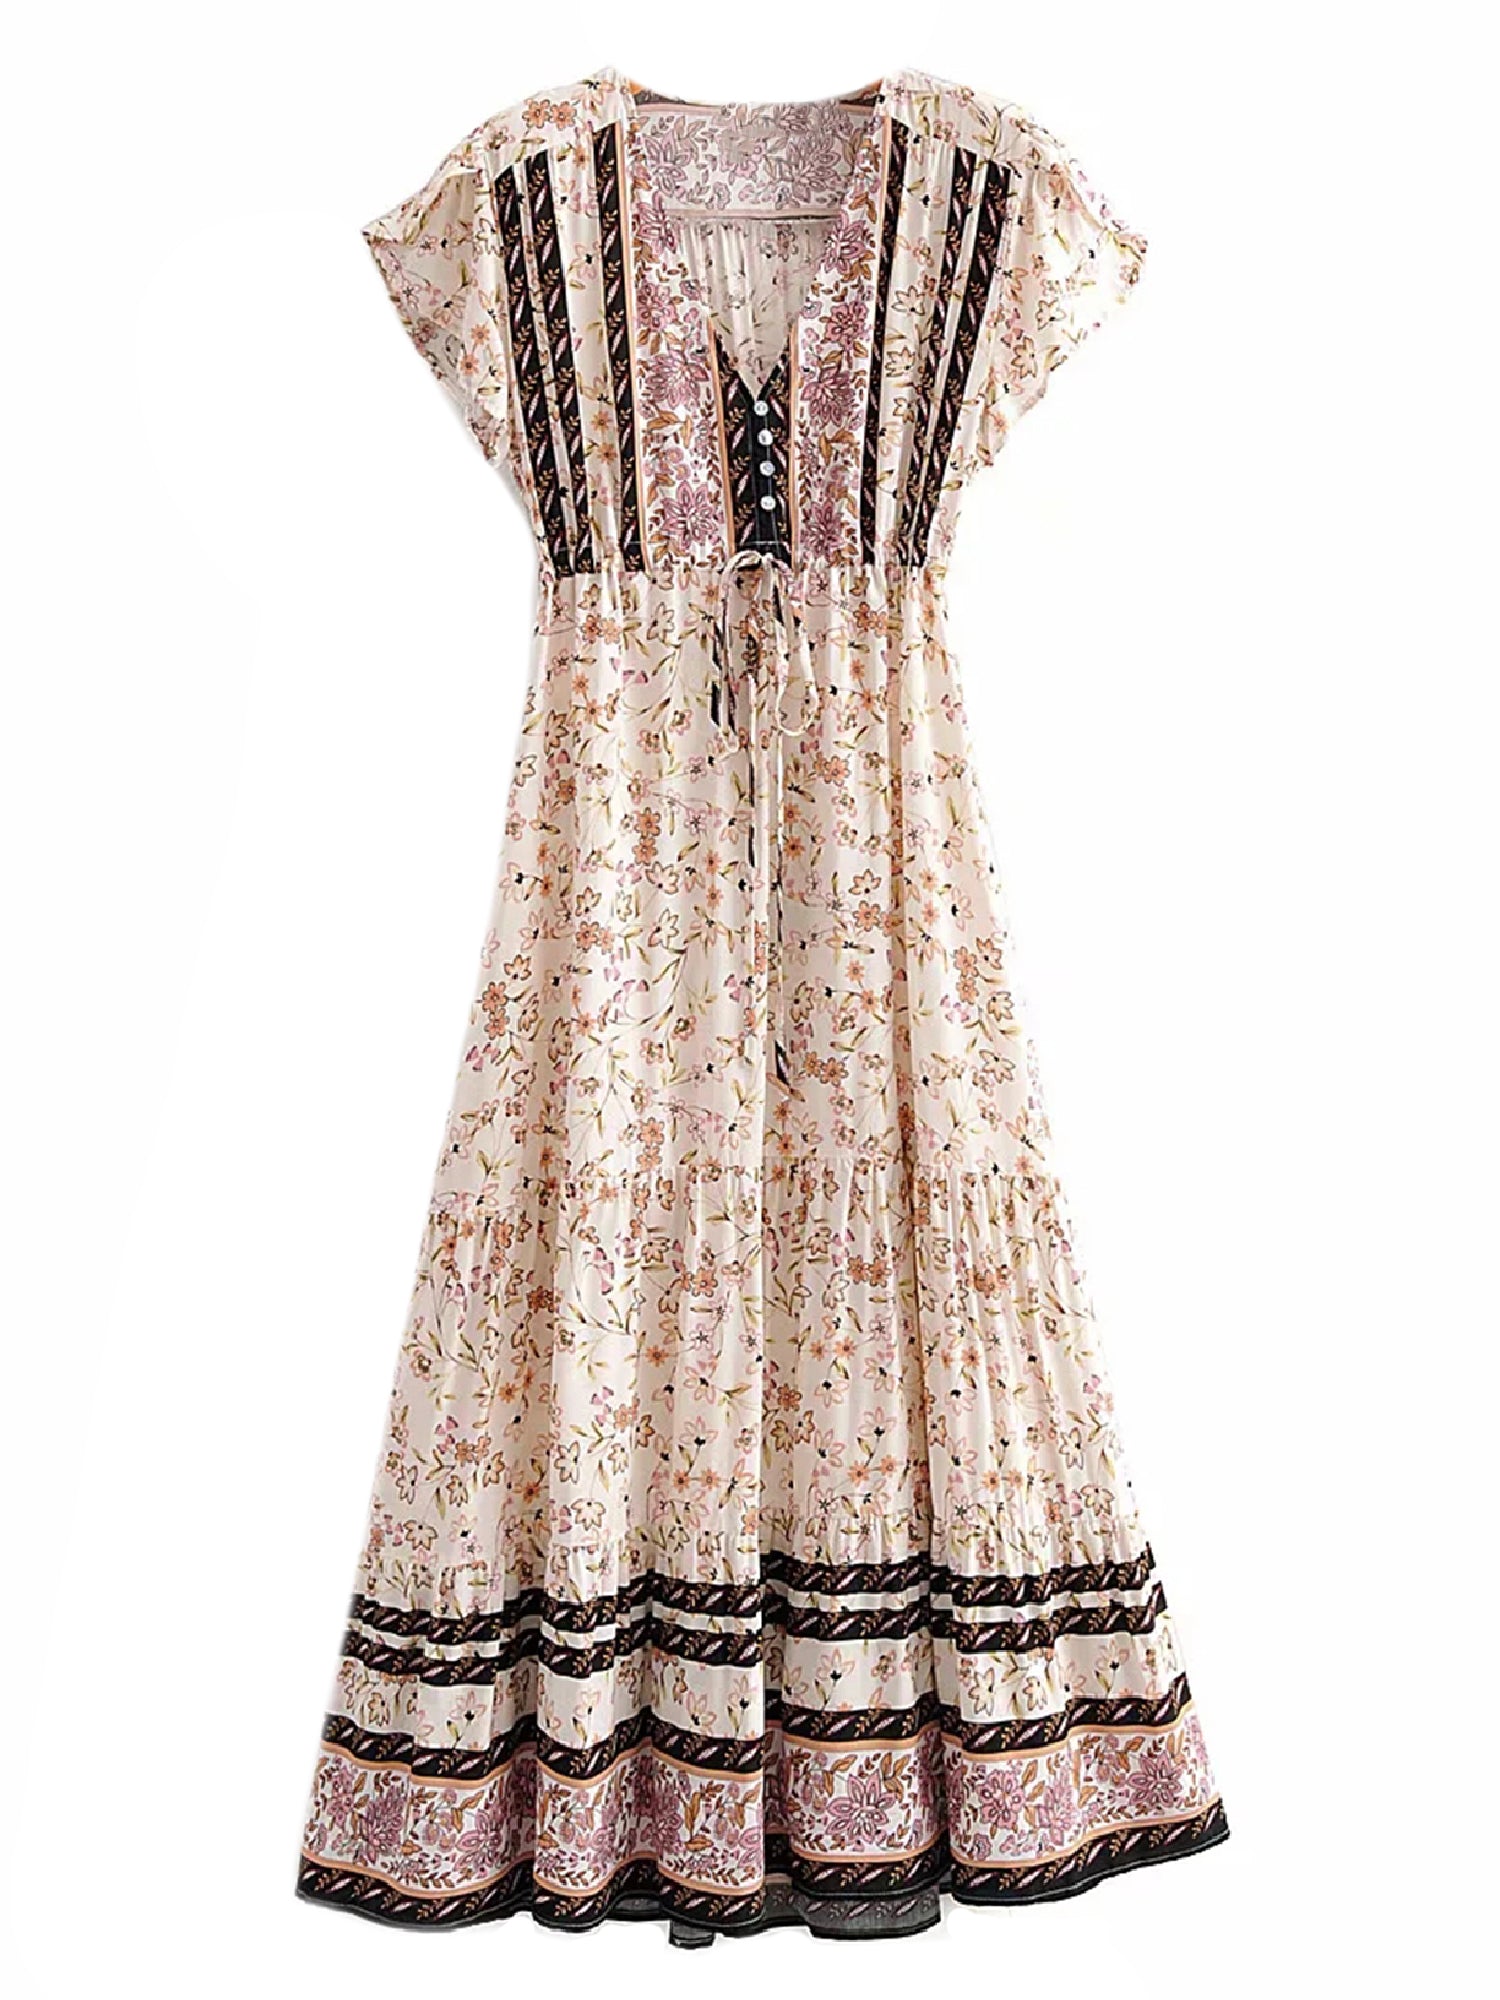 bohemian floral dress